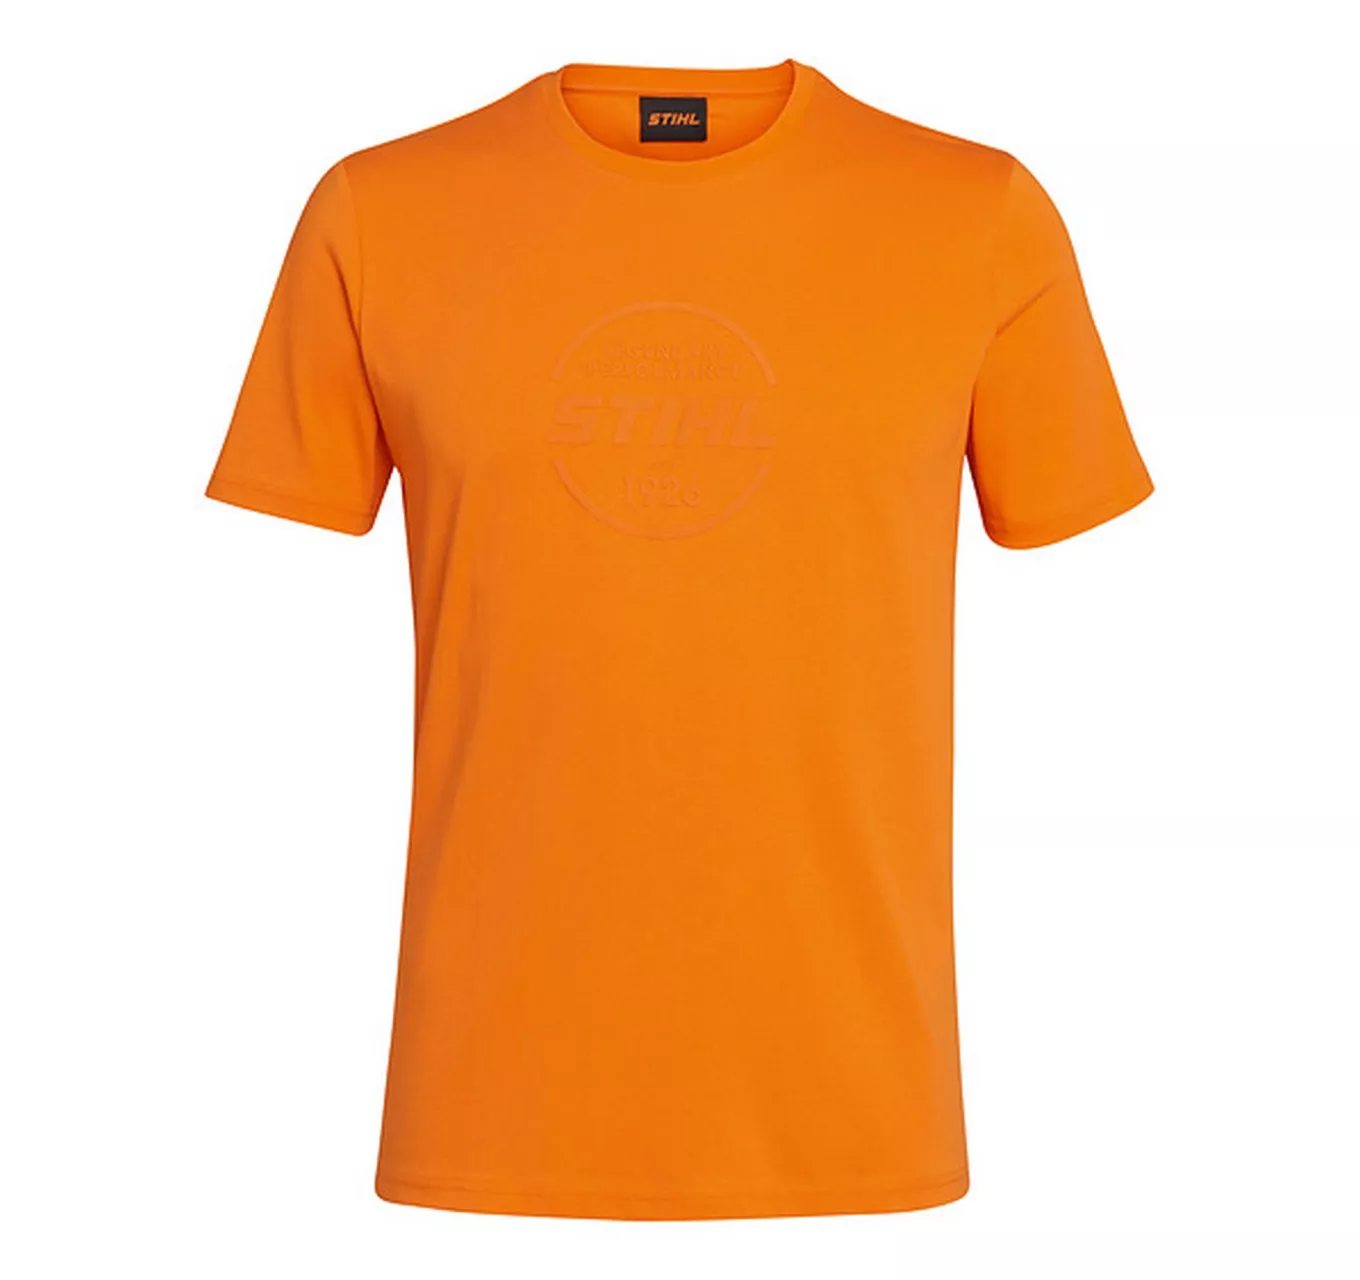 LOGO-CIRCLE Orange T-Shirt S